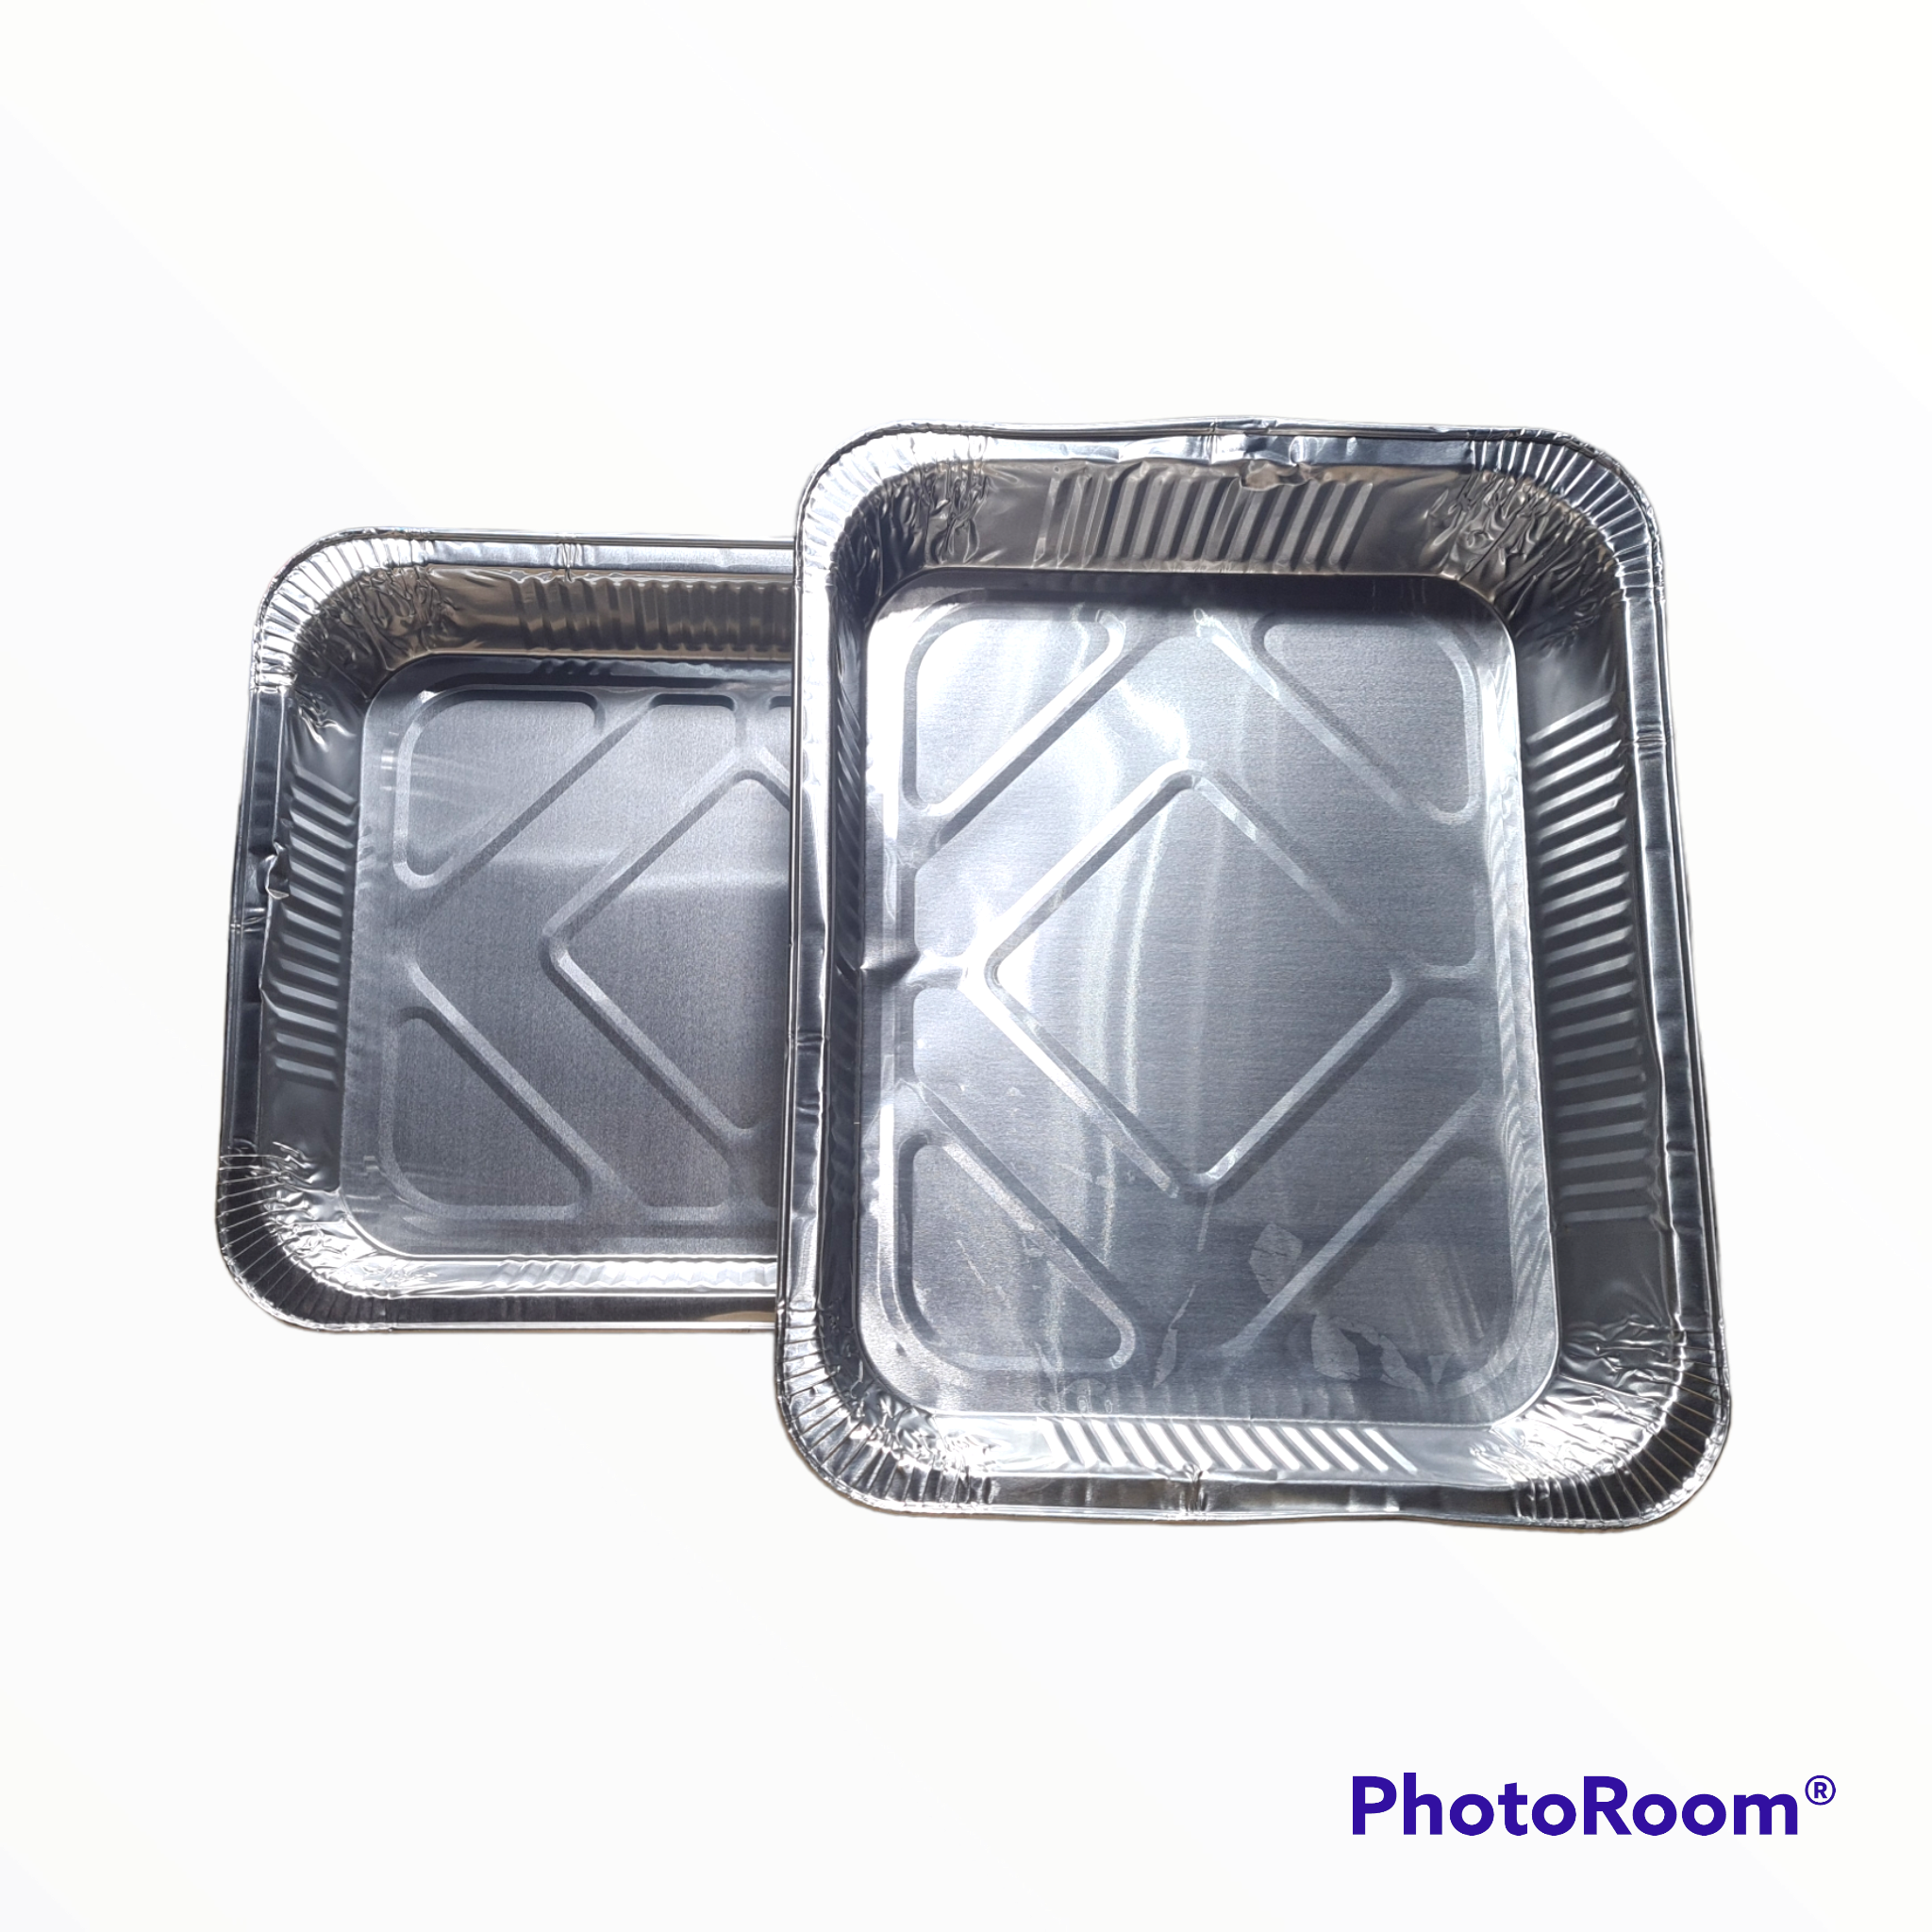 Vaschette alluminio con coperchio – RG Distribuzioni